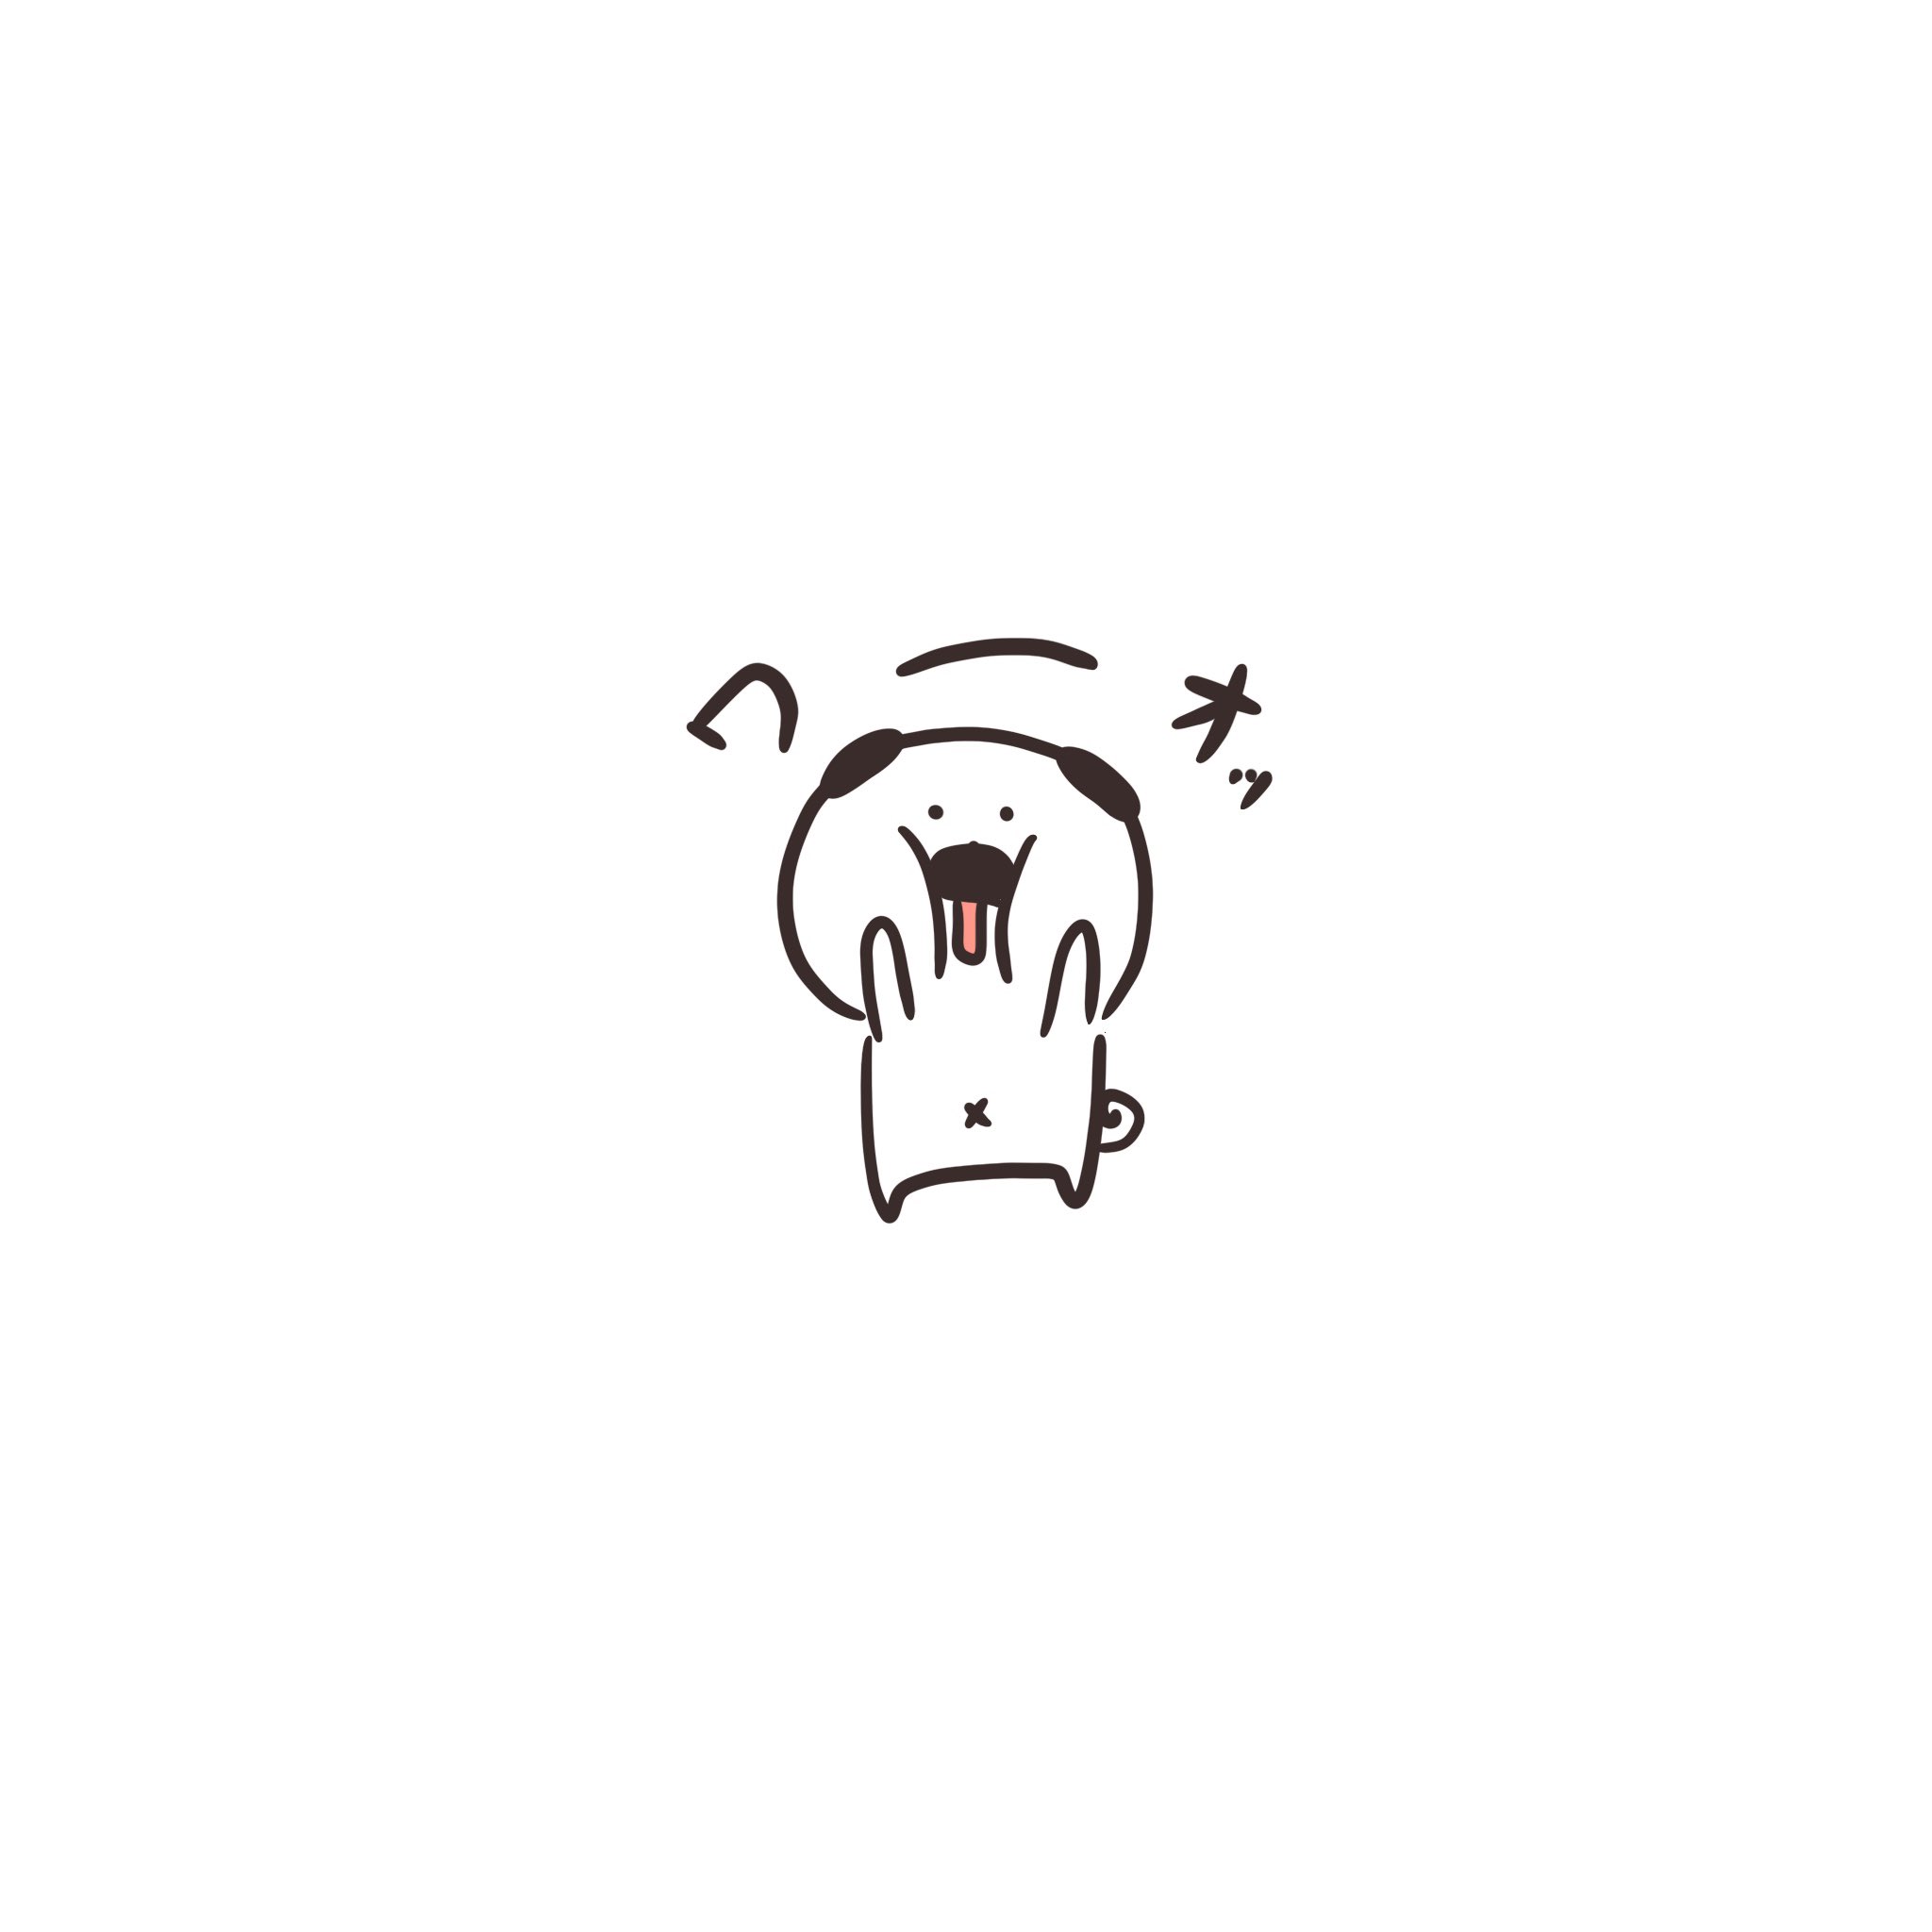 Manuken わーお 絵描きさんと繋がりたい マスコット Pug パグ イラスト マンガ まぬけん トマト かわいい いぬ Japan イラスト王国 Illustrator わお Wao T Co Qr6jpfqin7 Twitter